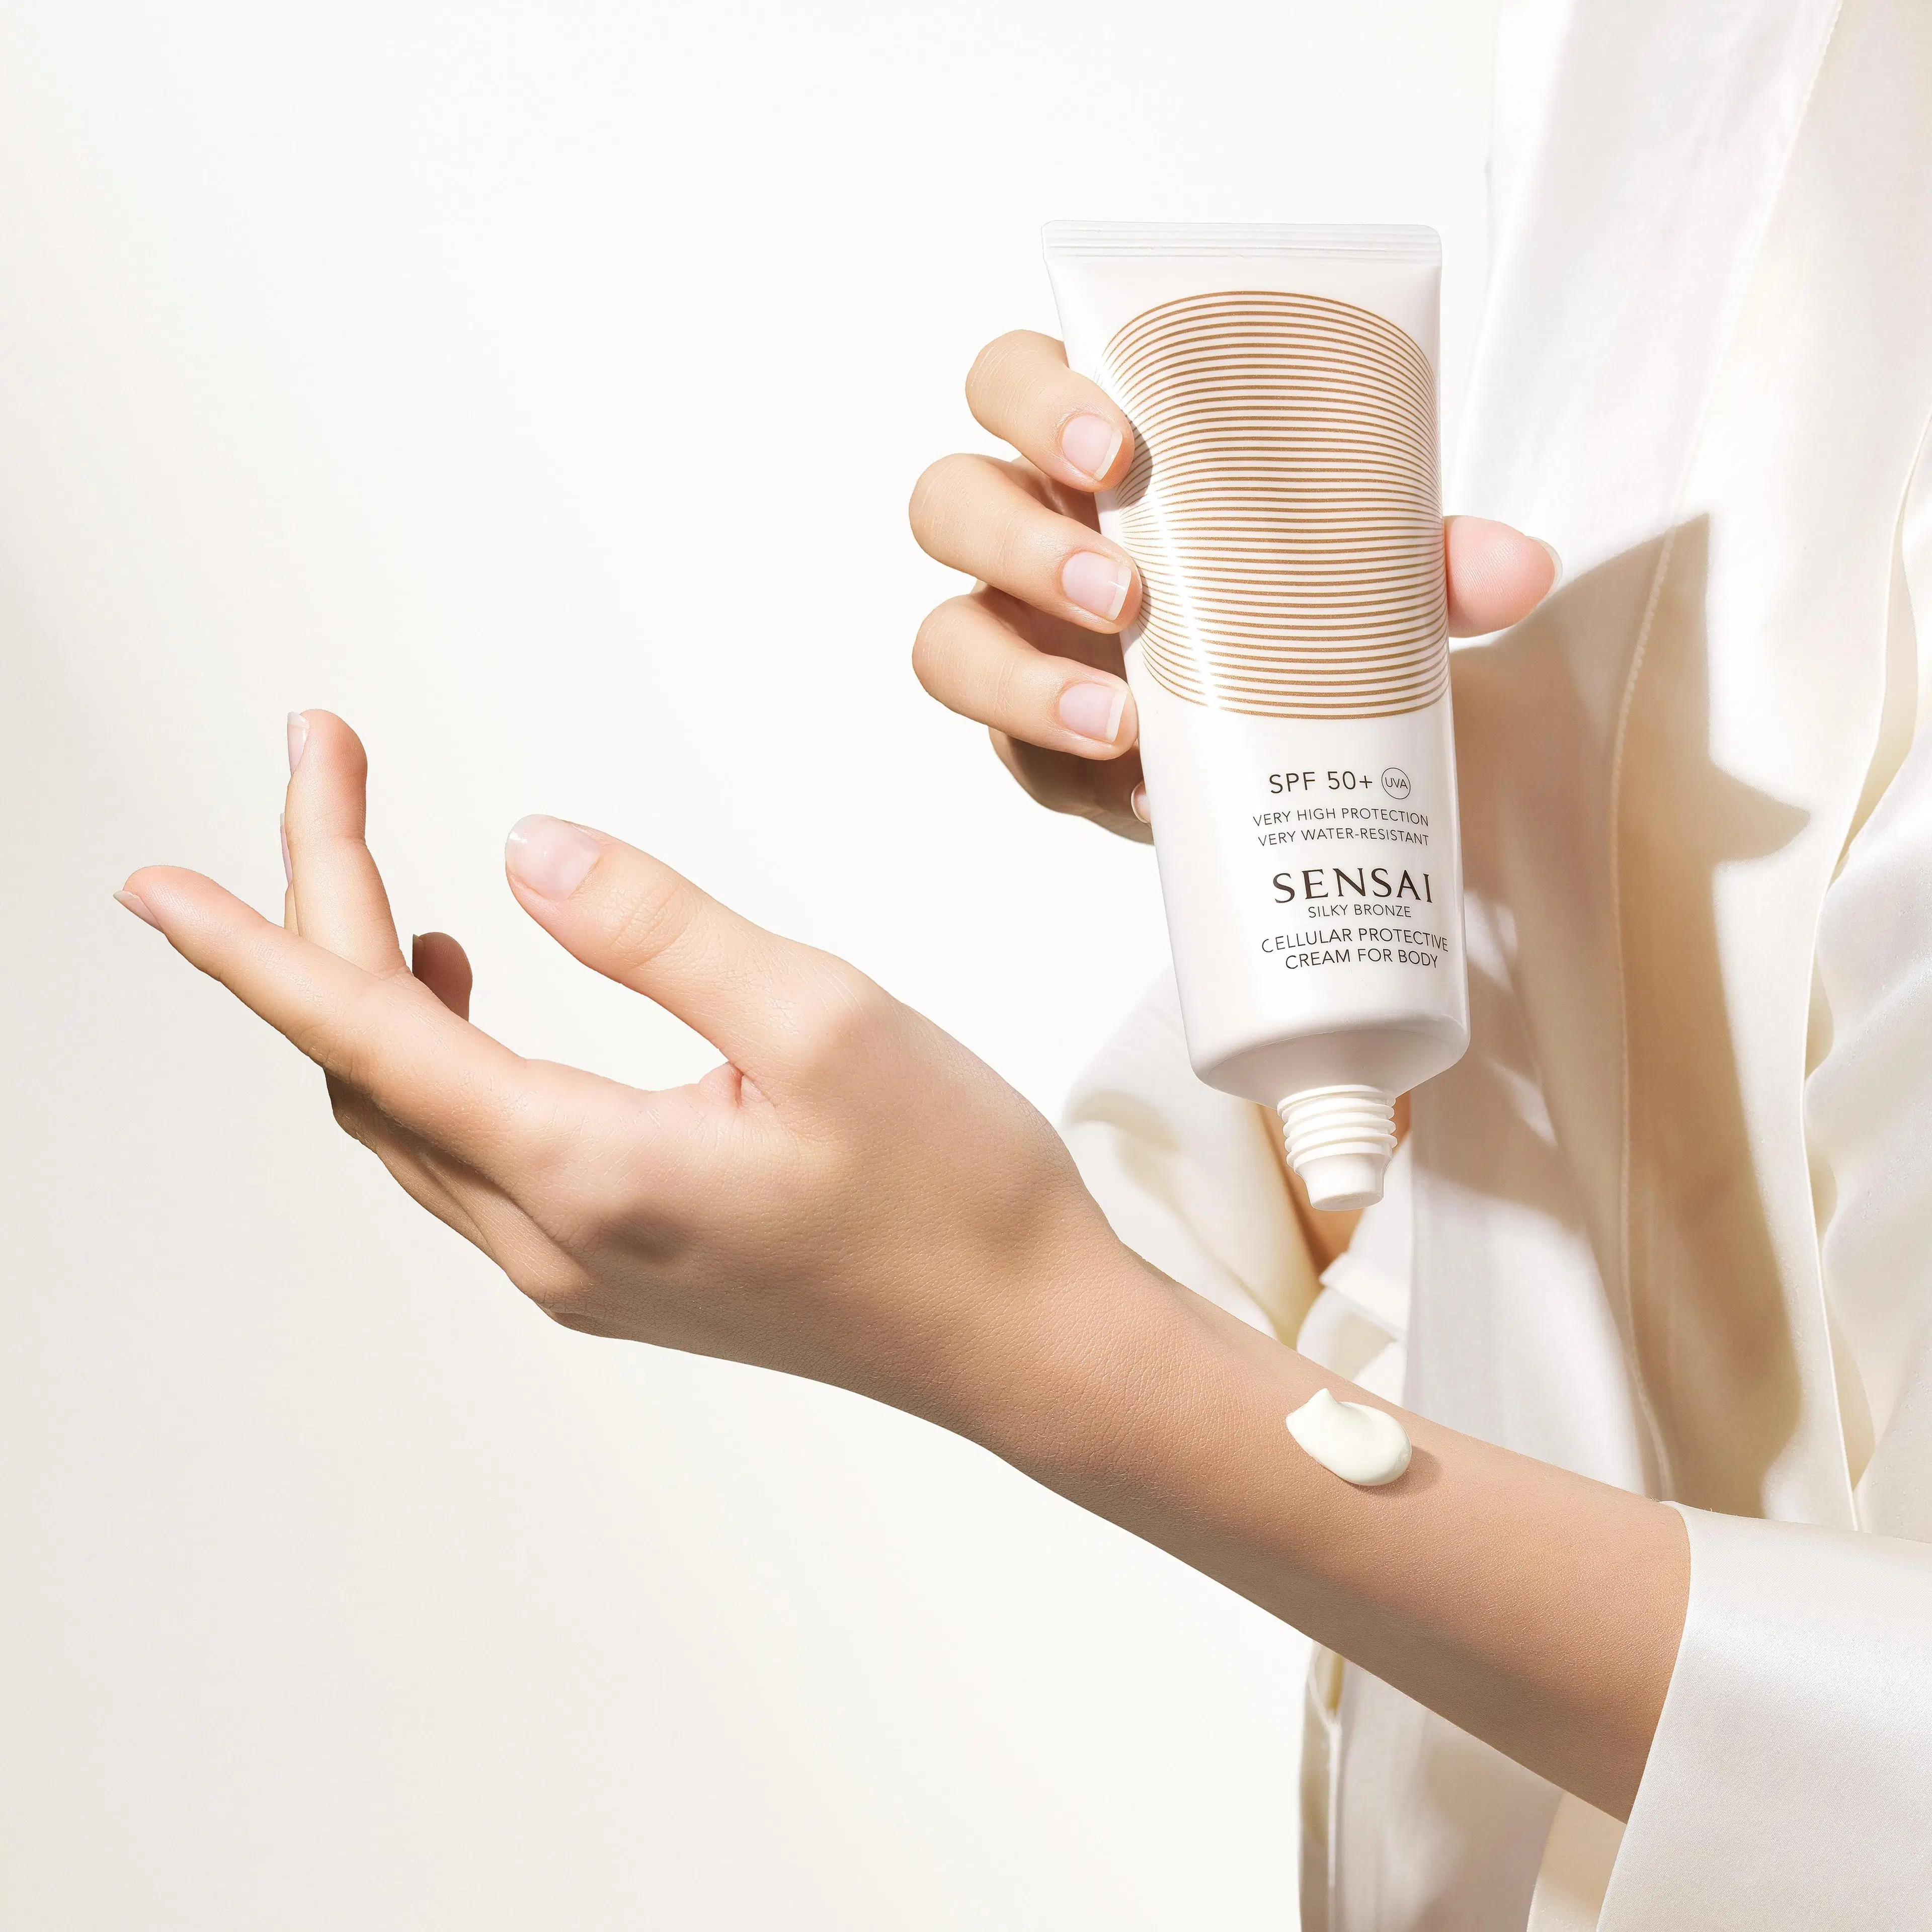 Sensai Silky Bronze Cellular Protective Cream for Body SPF 50+ aurinkosuojavoide vartalolle 150 ml